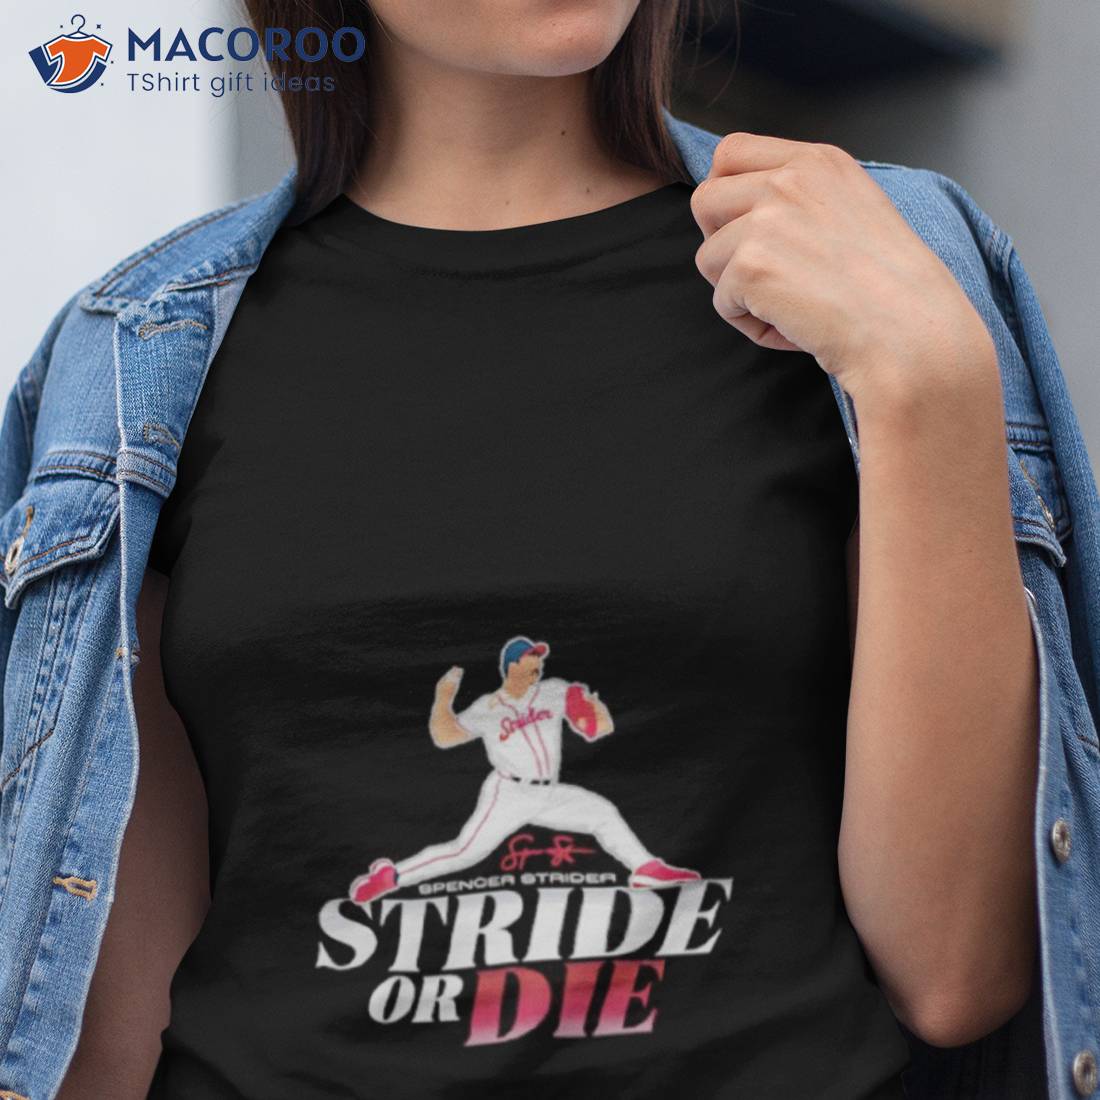 Spencer Strider: Stride Or Die T-shirt + Hoodie